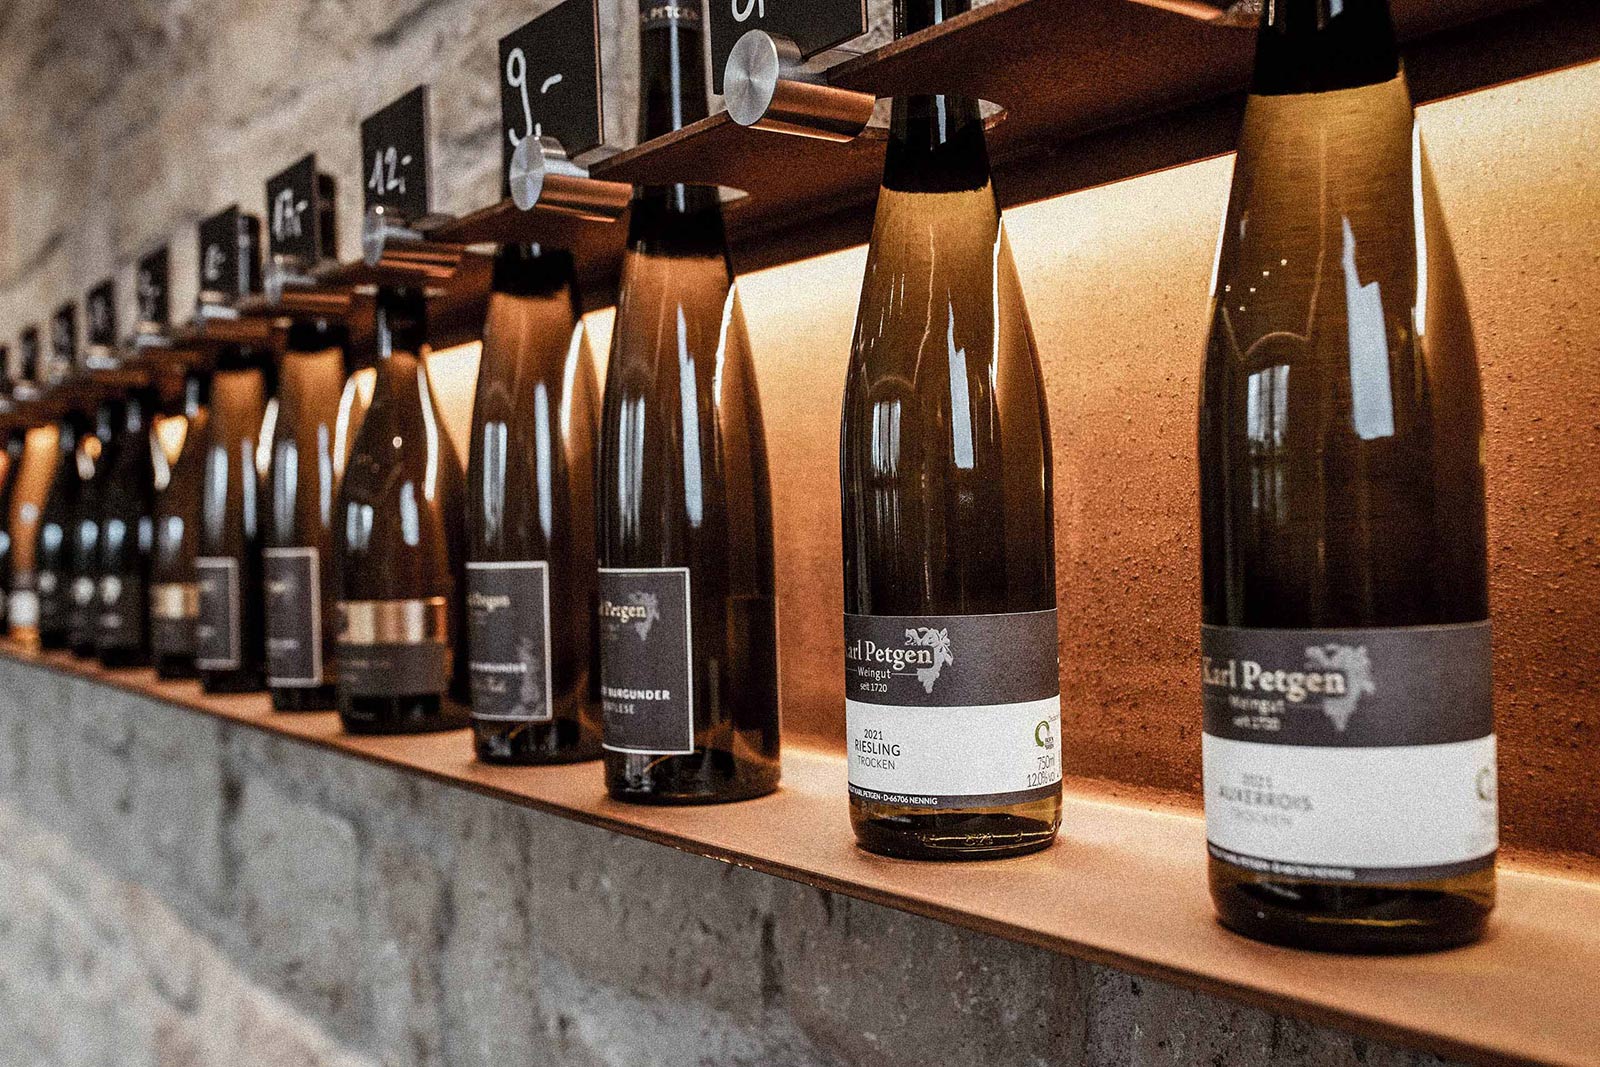 Wein aus dem Saarland – Weingut Karl Petgen – Weine in der Ausstellung